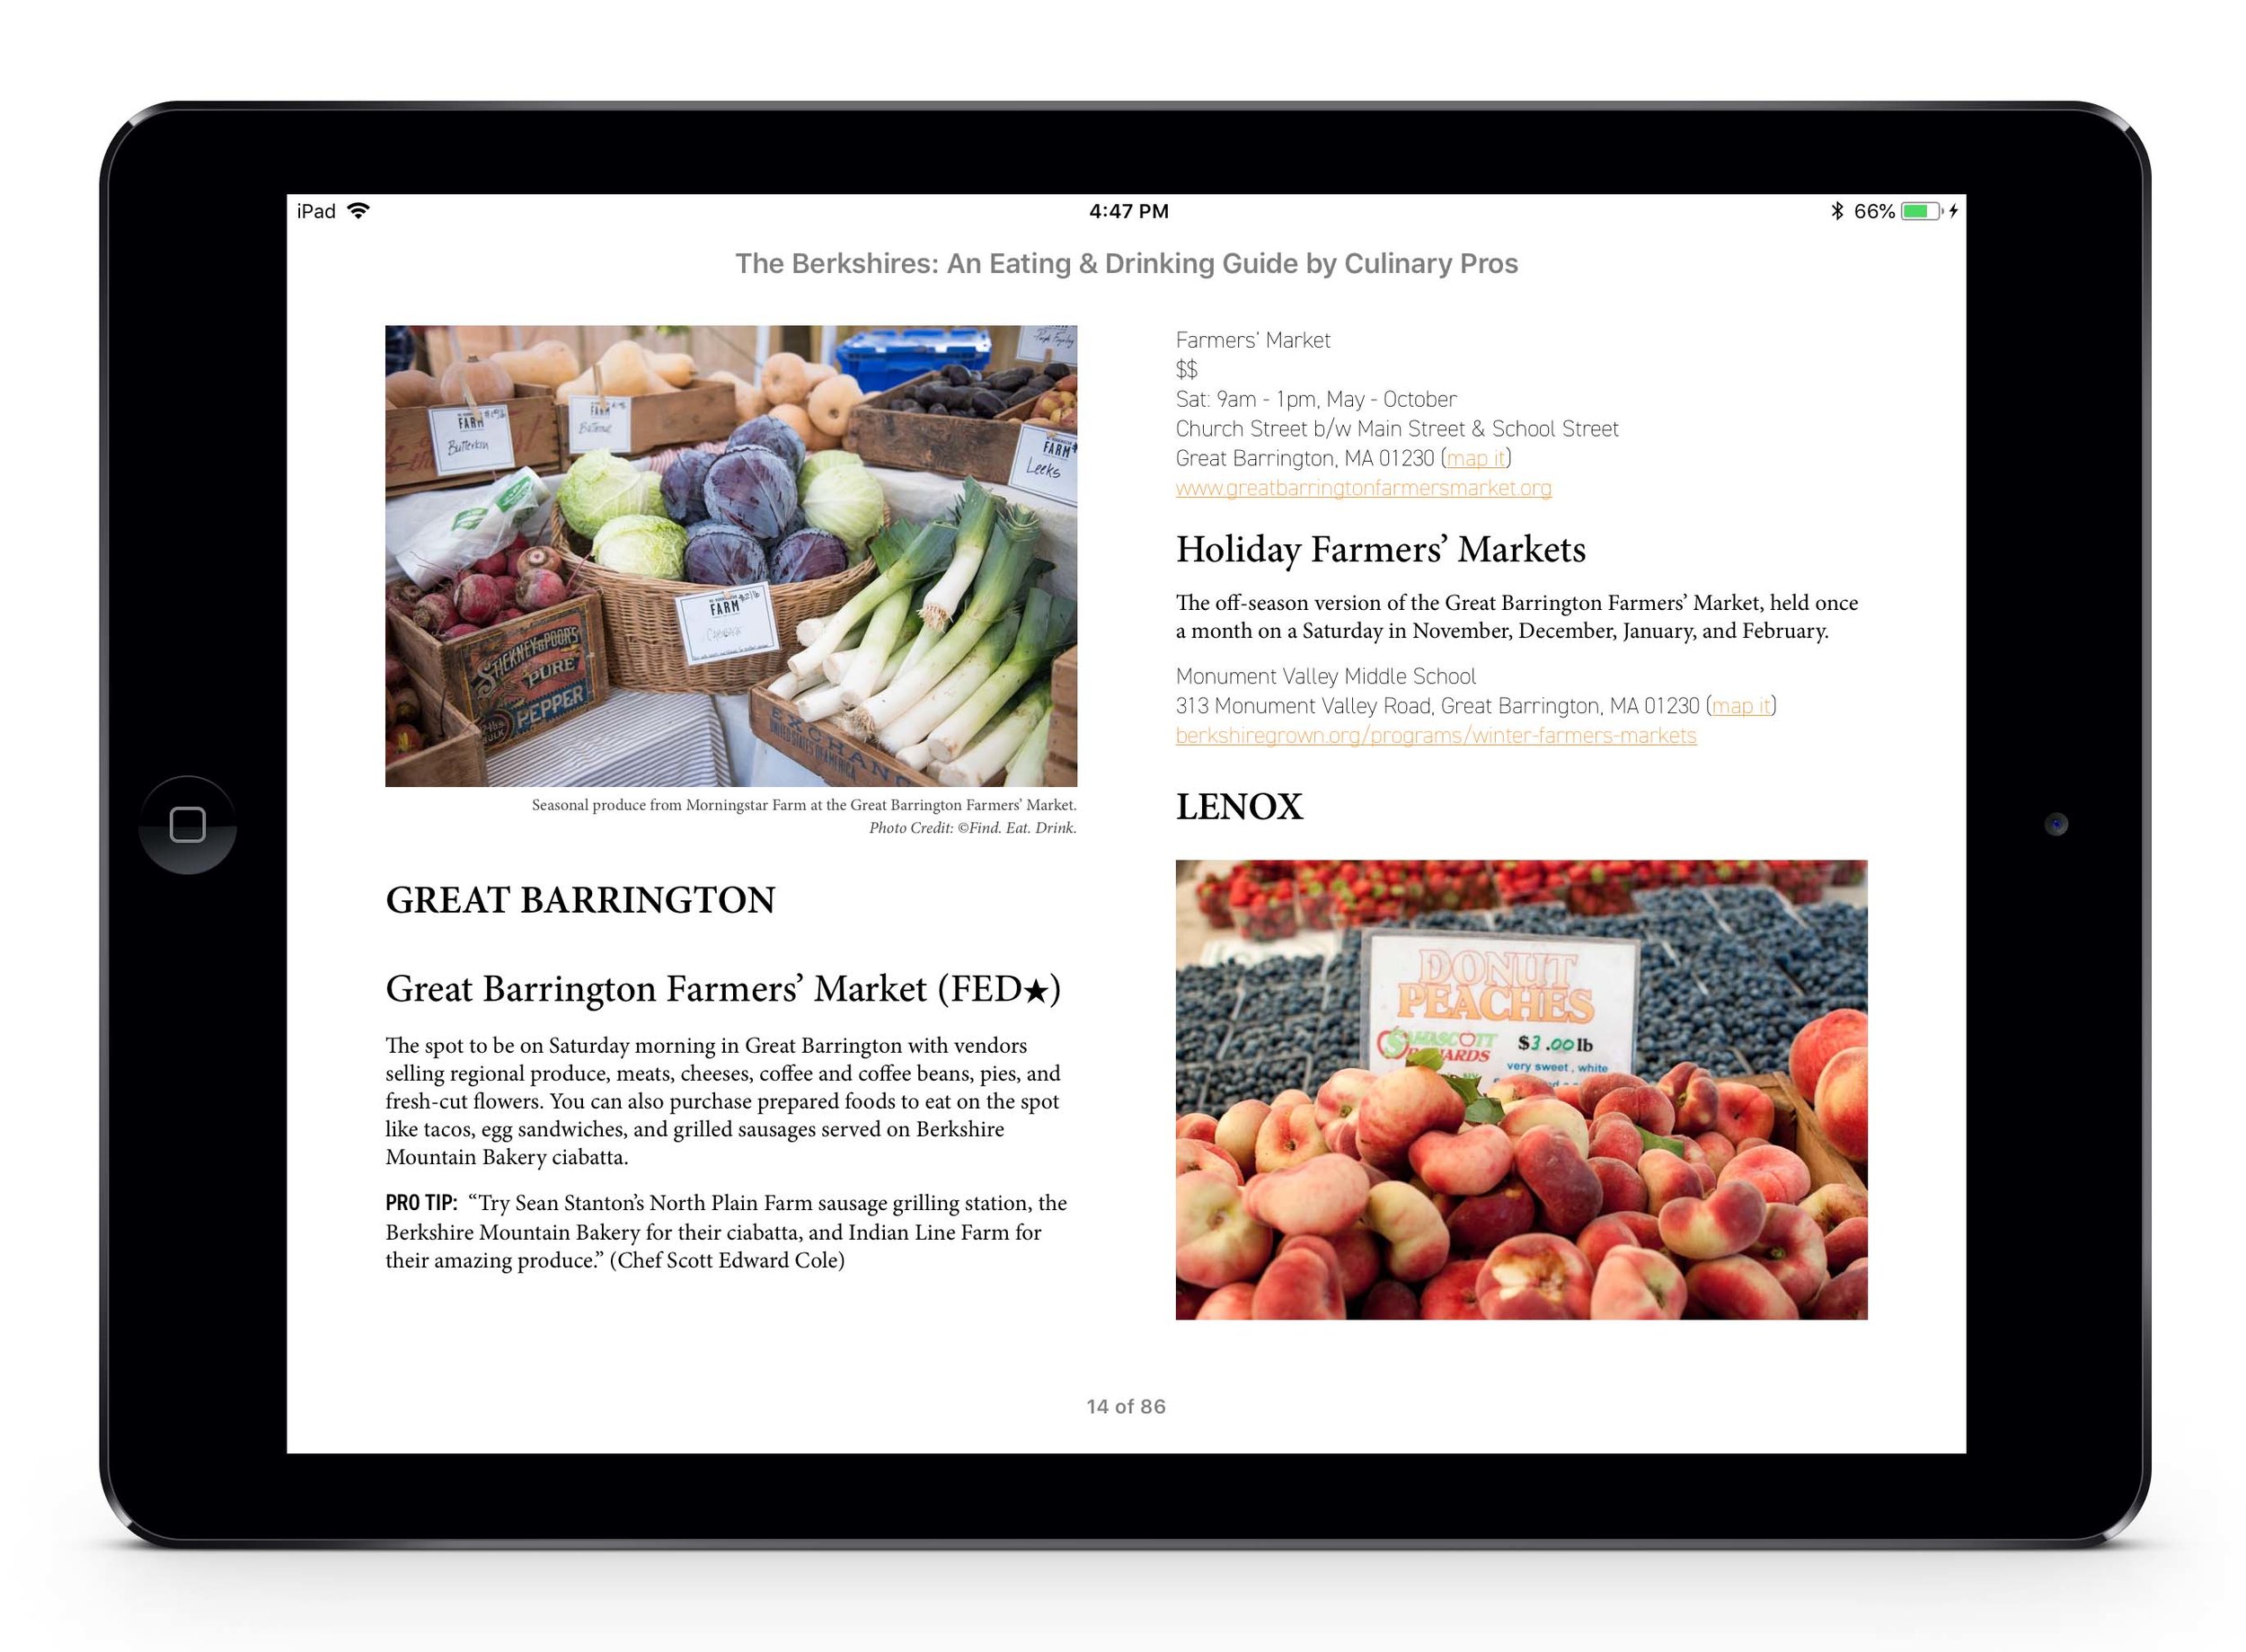 iPadAir_Berkshires_Screenshots_4.15.jpg